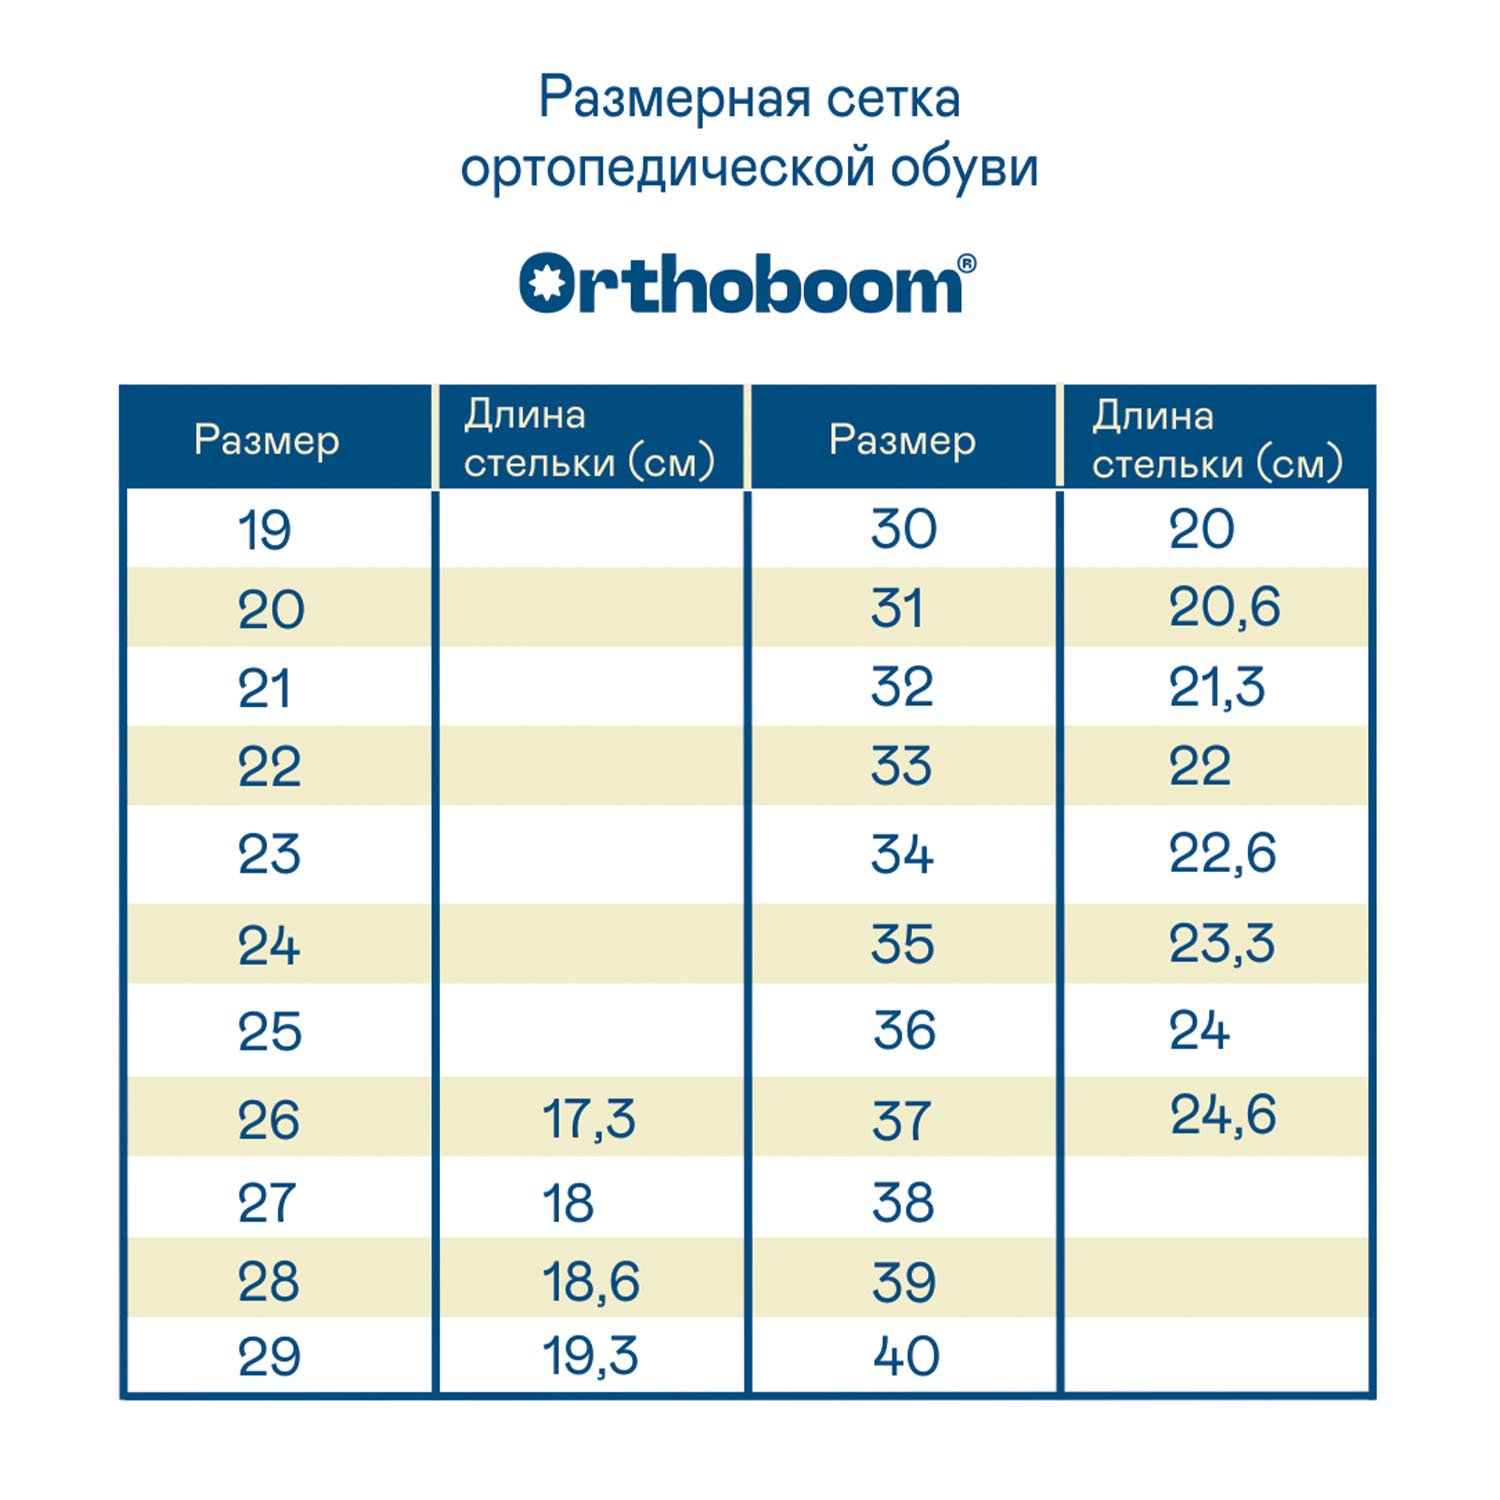 Детские сандалии ORTHOBOOM 81057-03 сигнальный серый